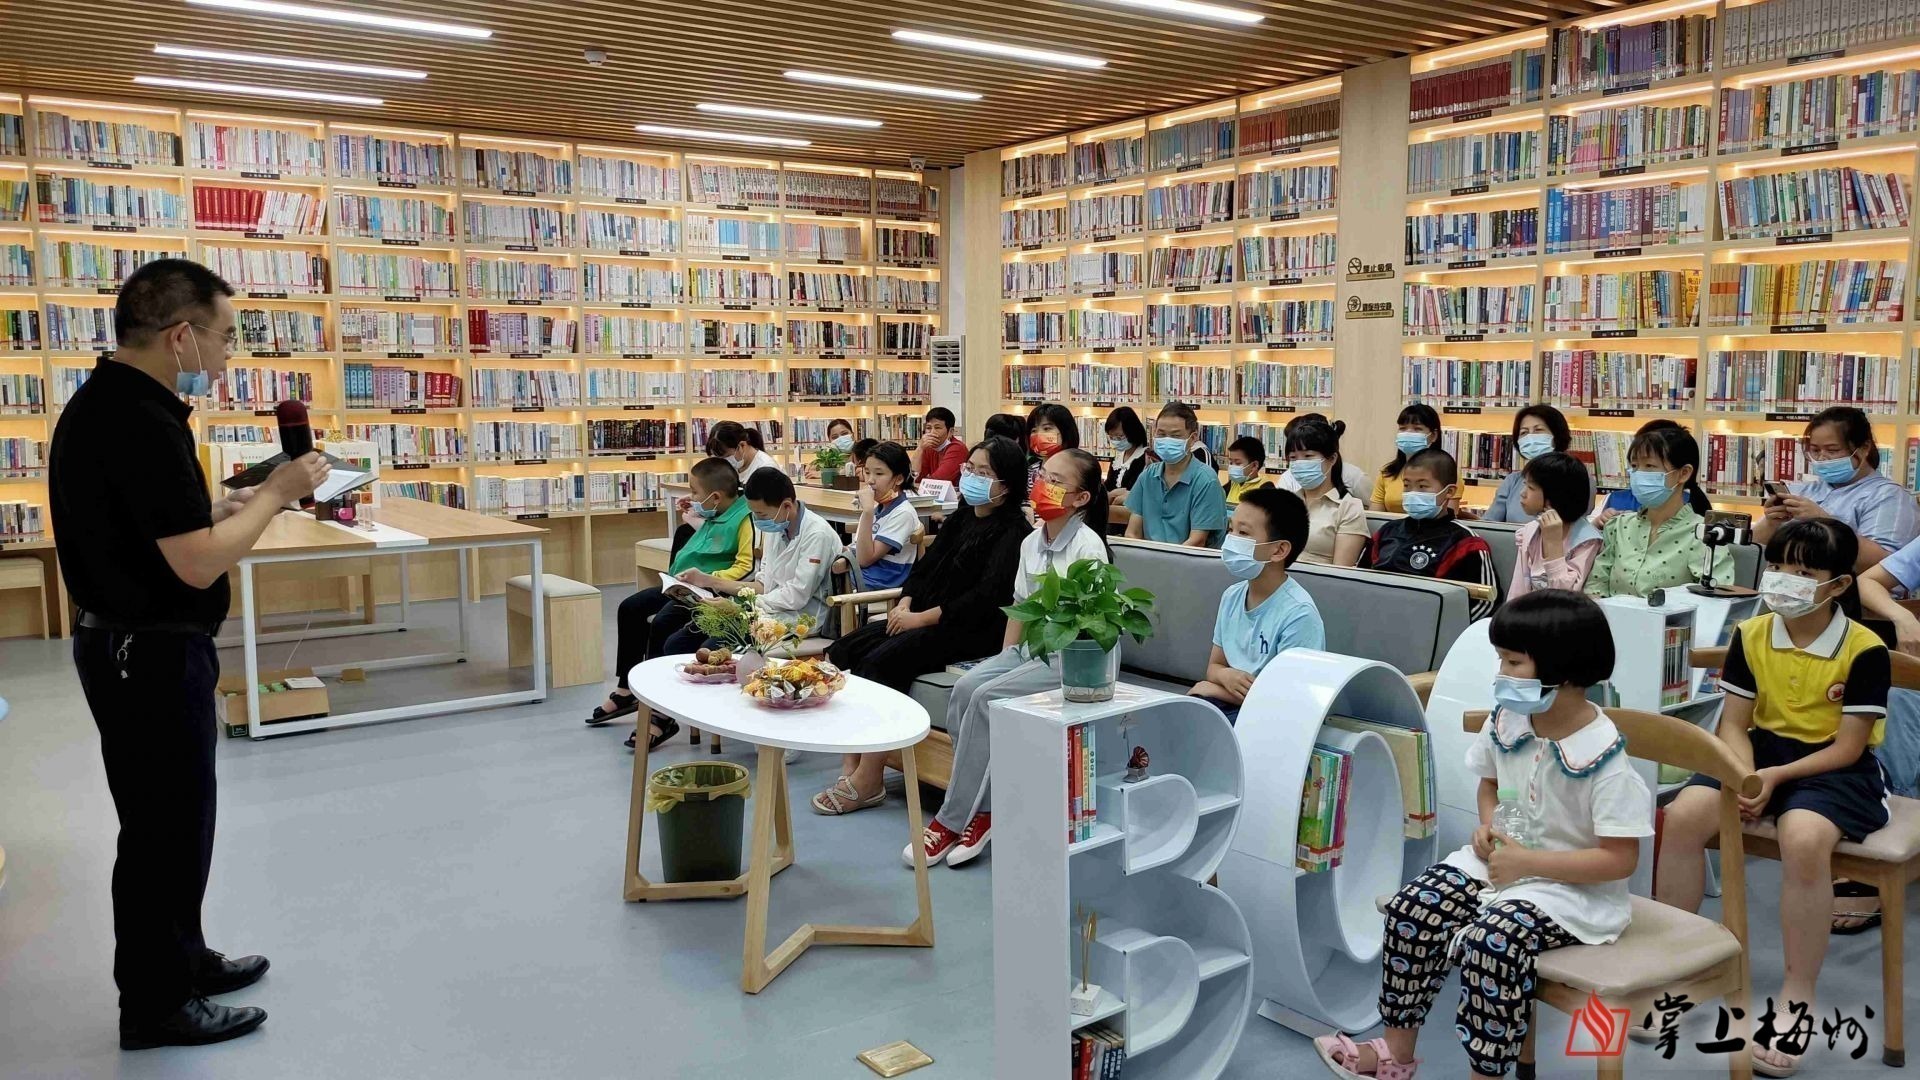 多读书读好书梅州市梅江区图书馆这场阅读沙龙书香浓